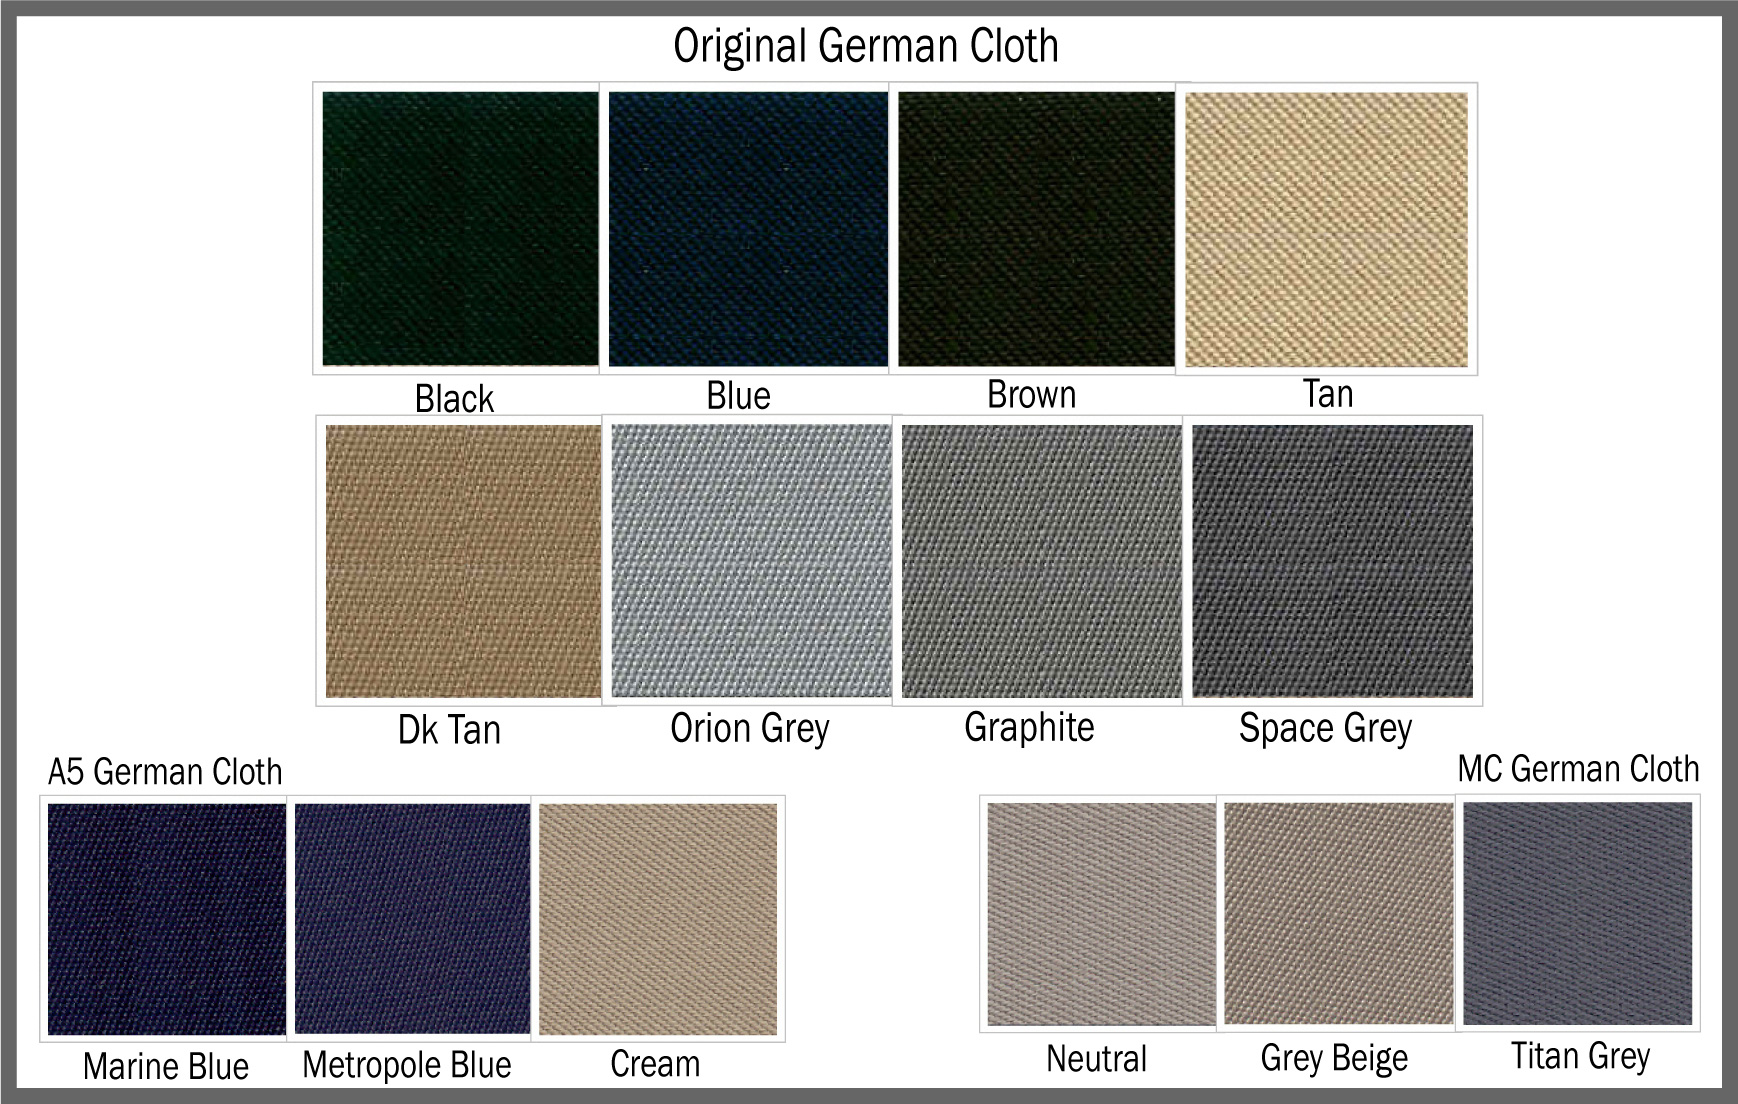 German Original Cloth Top Material